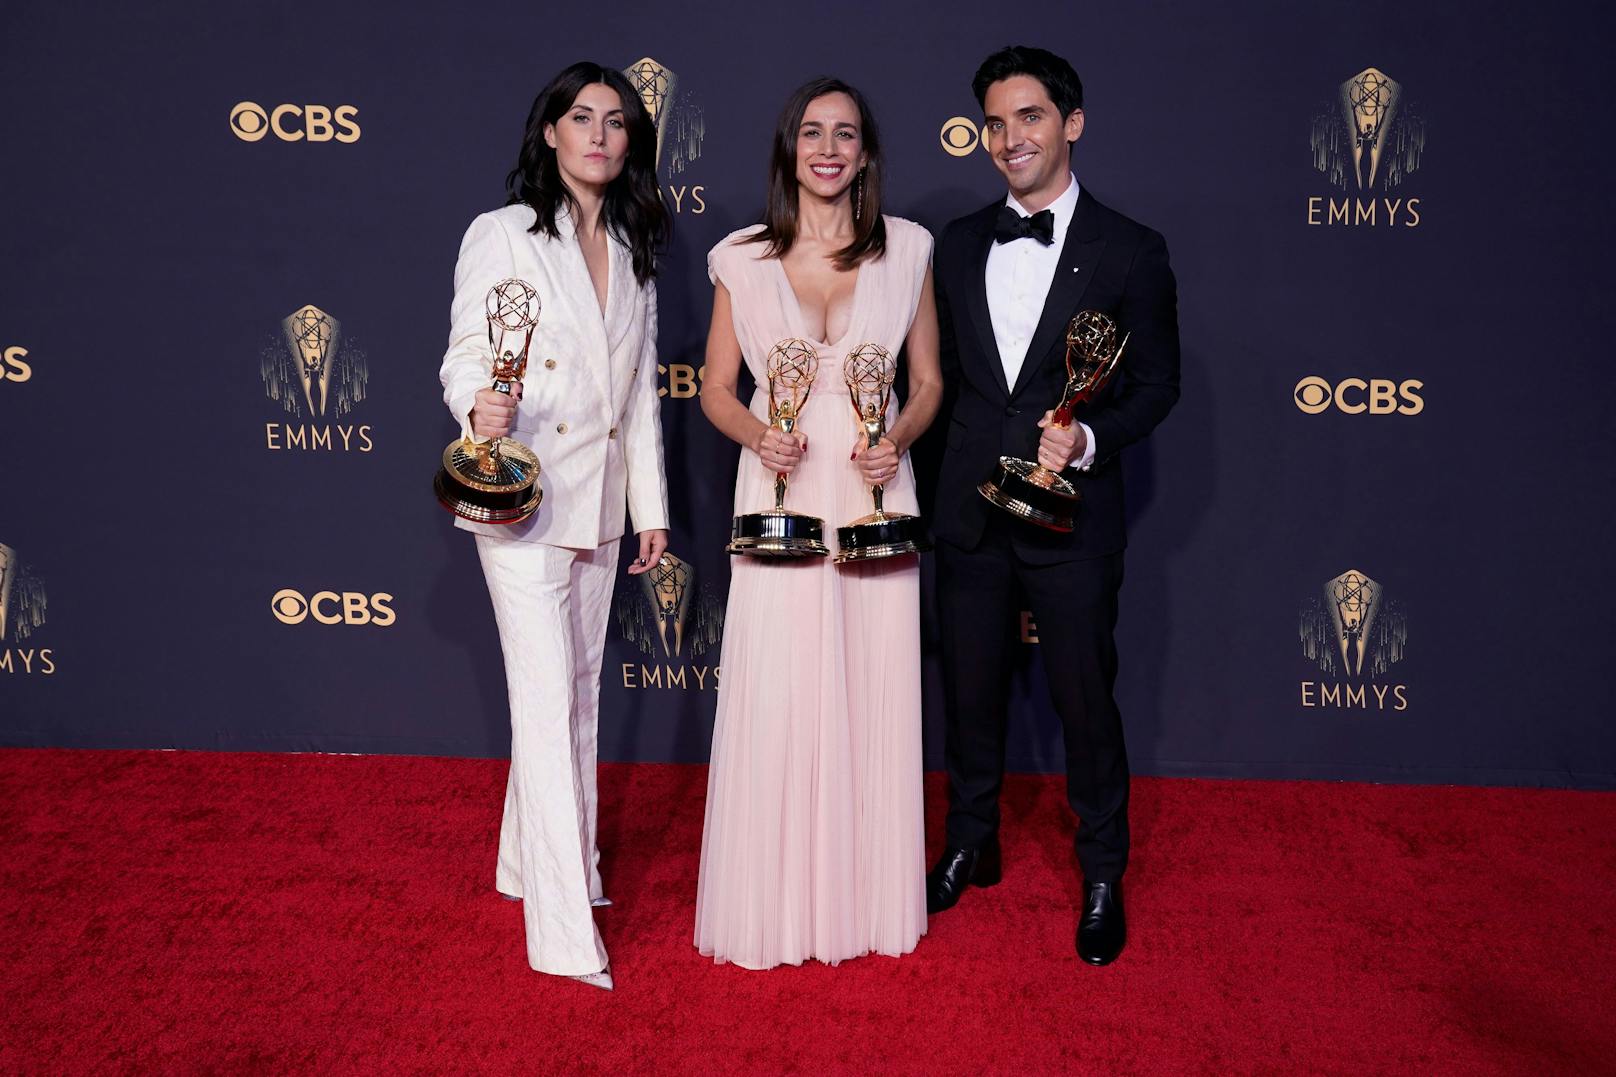 Jen Statsky, Lucia Aniello and Paul W. Downs gewannen für das beste Drehbuch einer Comedy-Serie in "Hacks". Lucia Aniello sogar auch noch für die beste Regie einer Comedy-Serie ("Hacks").&nbsp;&nbsp;